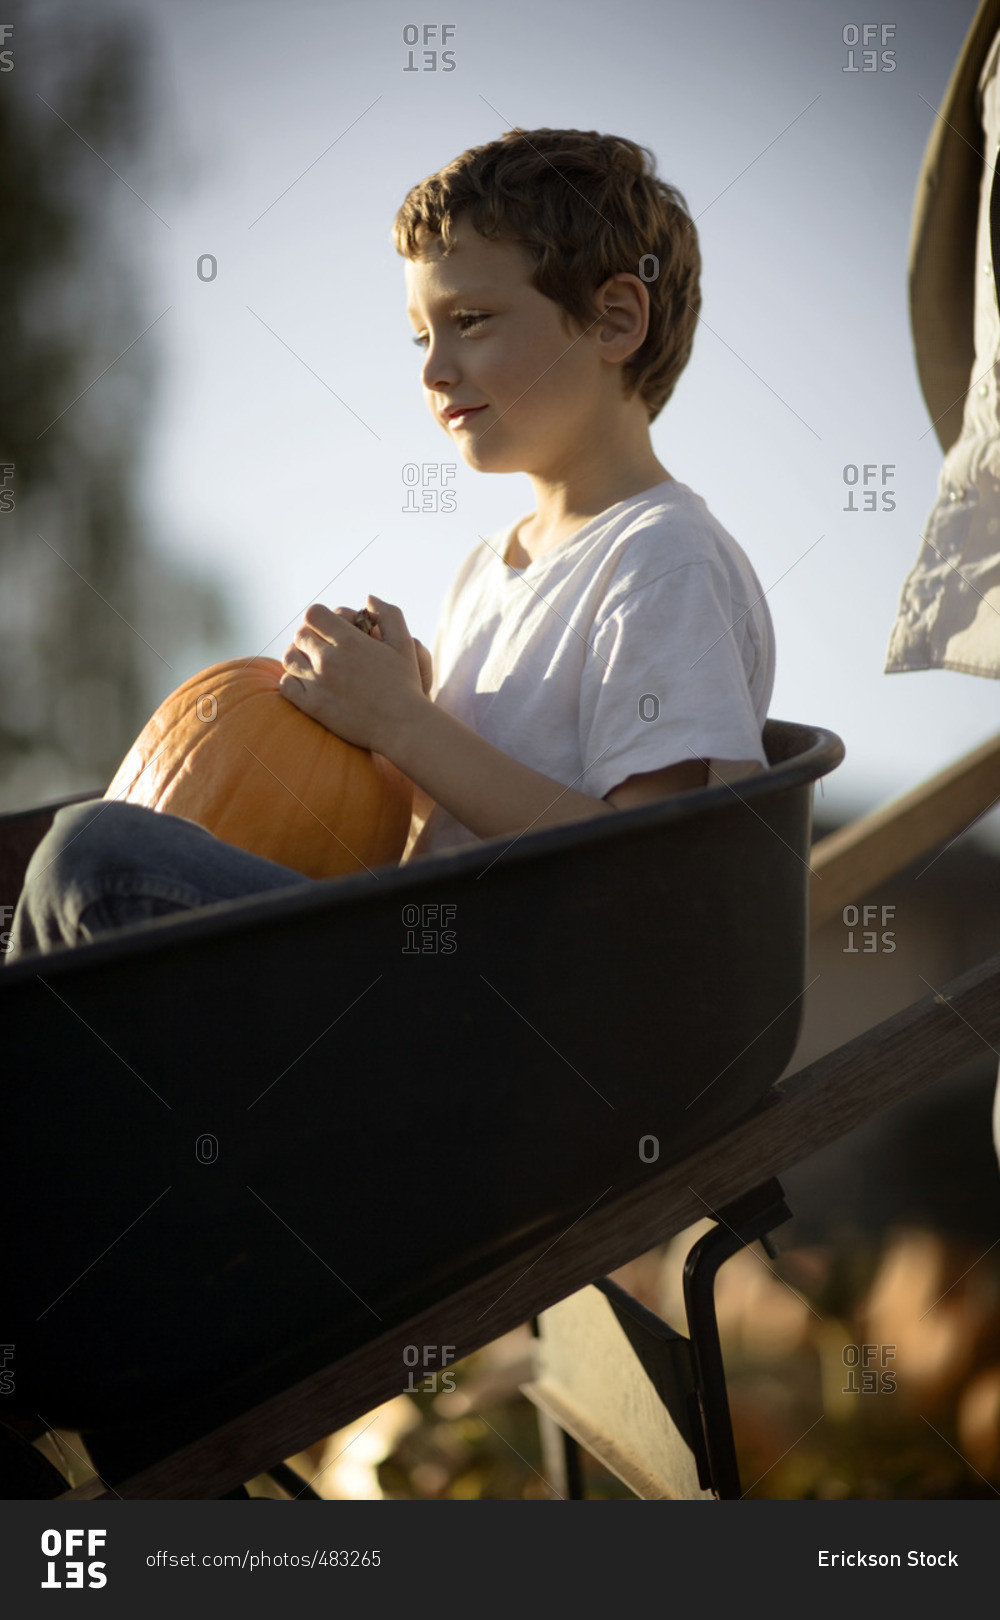 Young boy choosing a Halloween pumpkin at the pumpkin patch